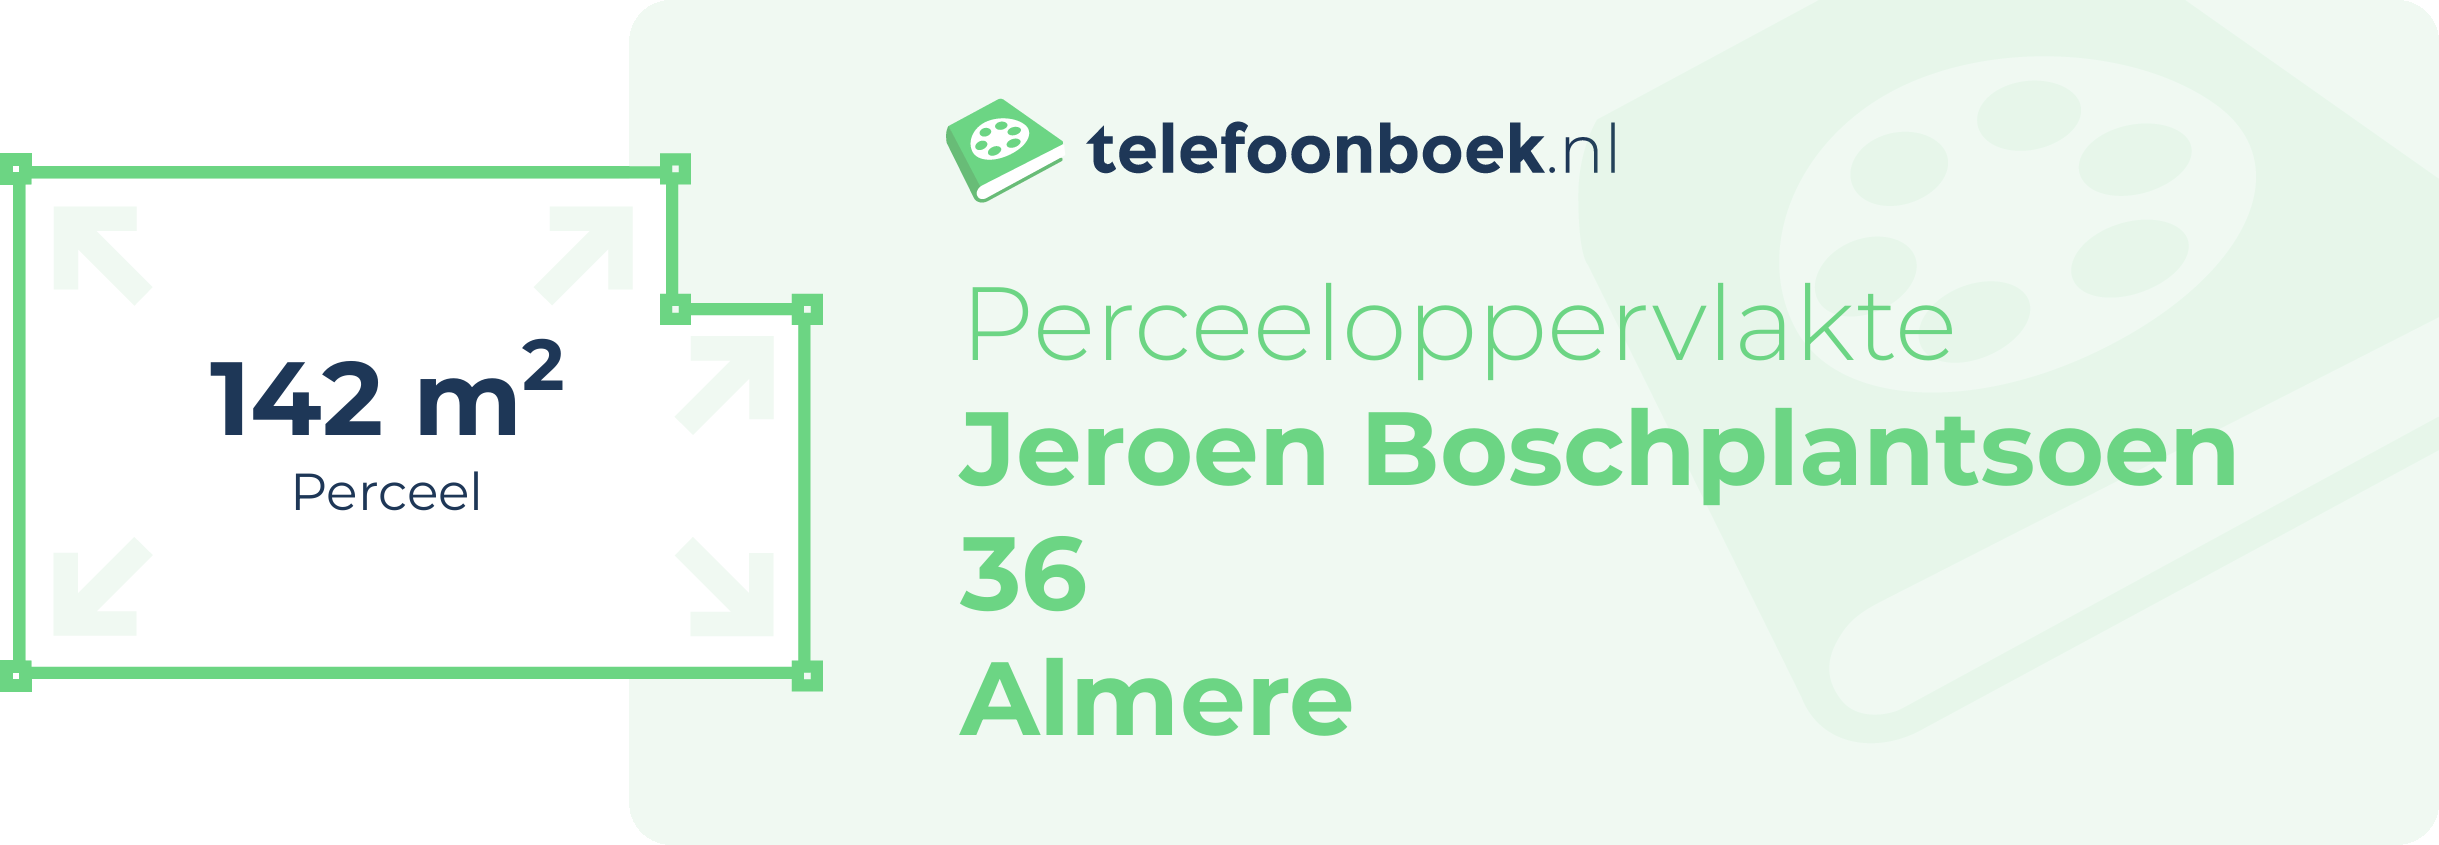 Perceeloppervlakte Jeroen Boschplantsoen 36 Almere